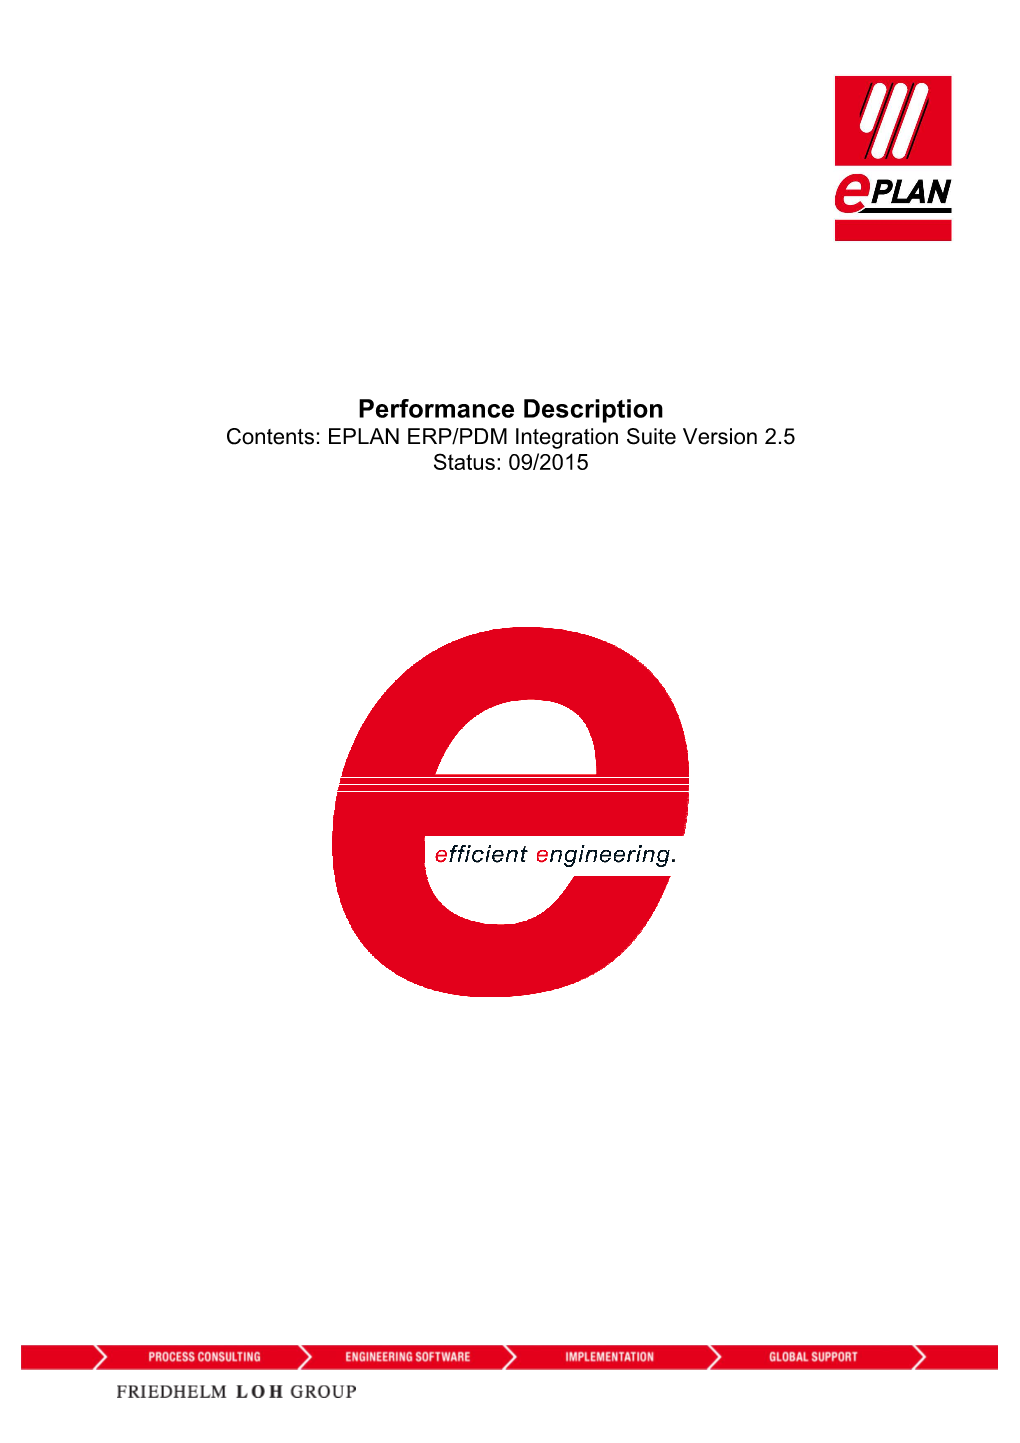 Performance Description Contents: EPLAN ERP/PDM Integration Suite Version 2.5 Status: 09/2015